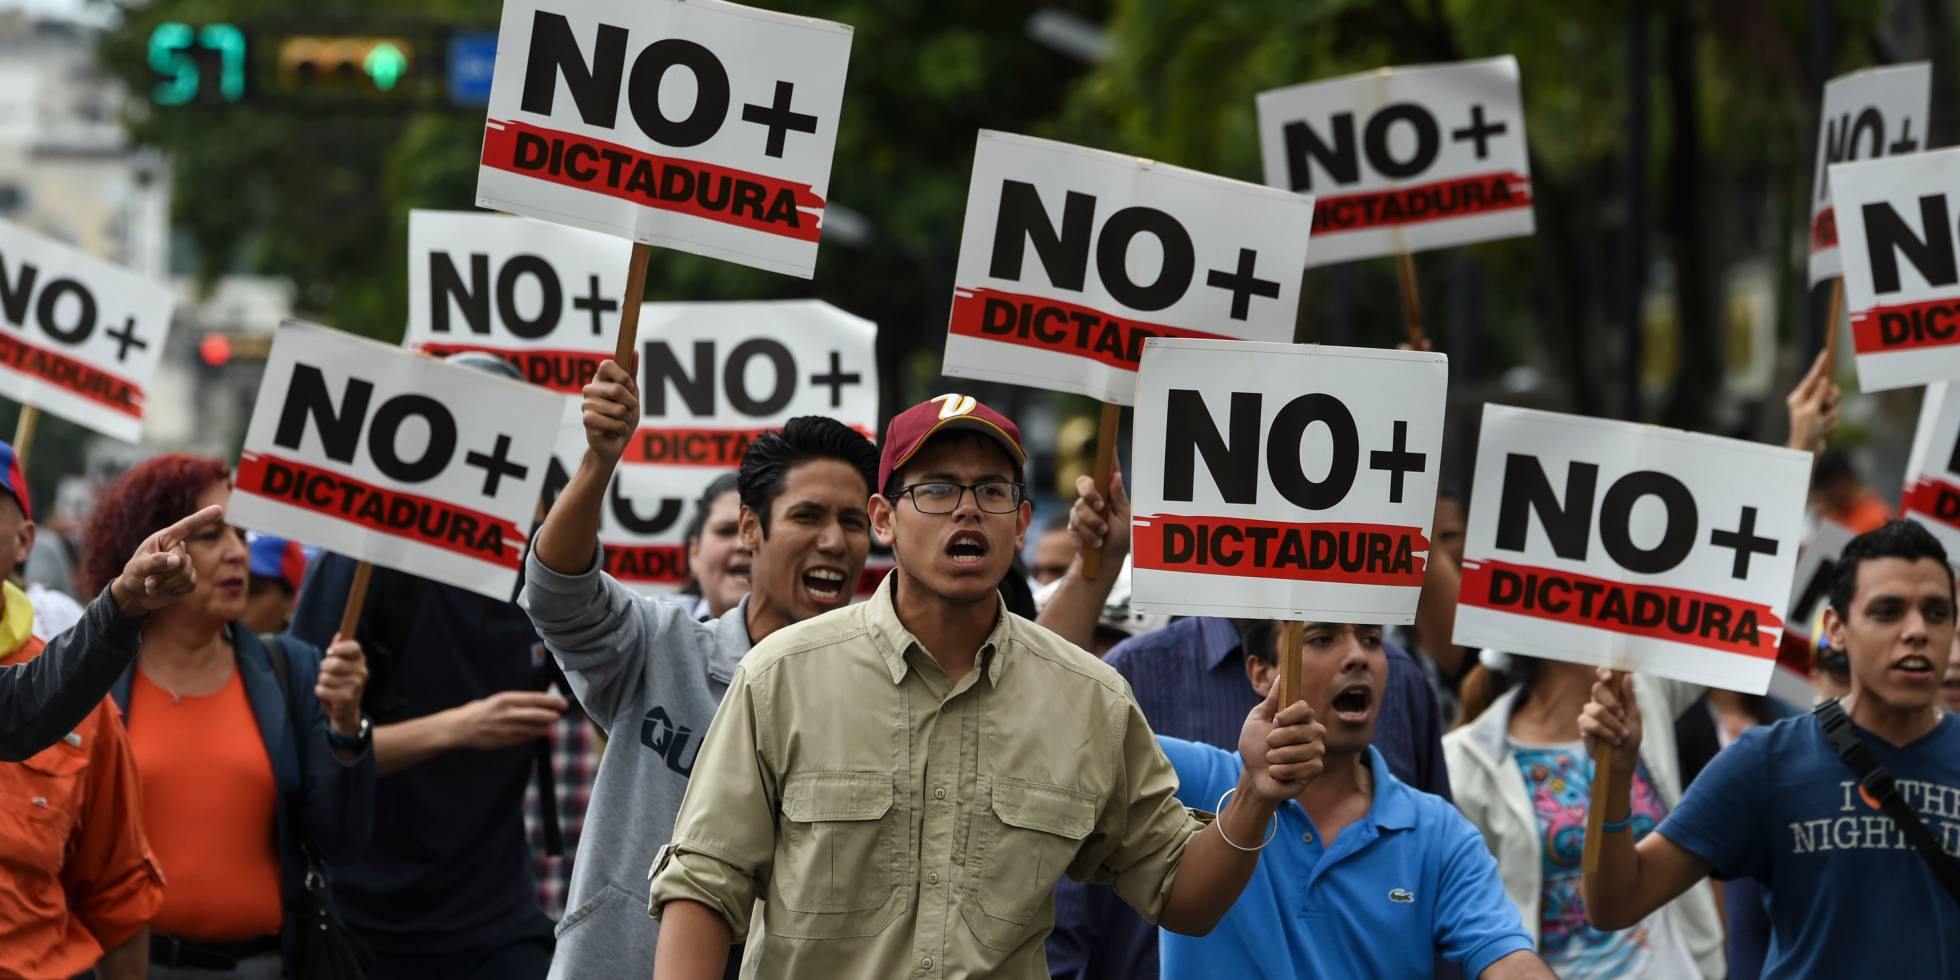 Fotos La última Hora De La Crisis Política En Venezuela En Imágenes Internacional El PaÍs 6906